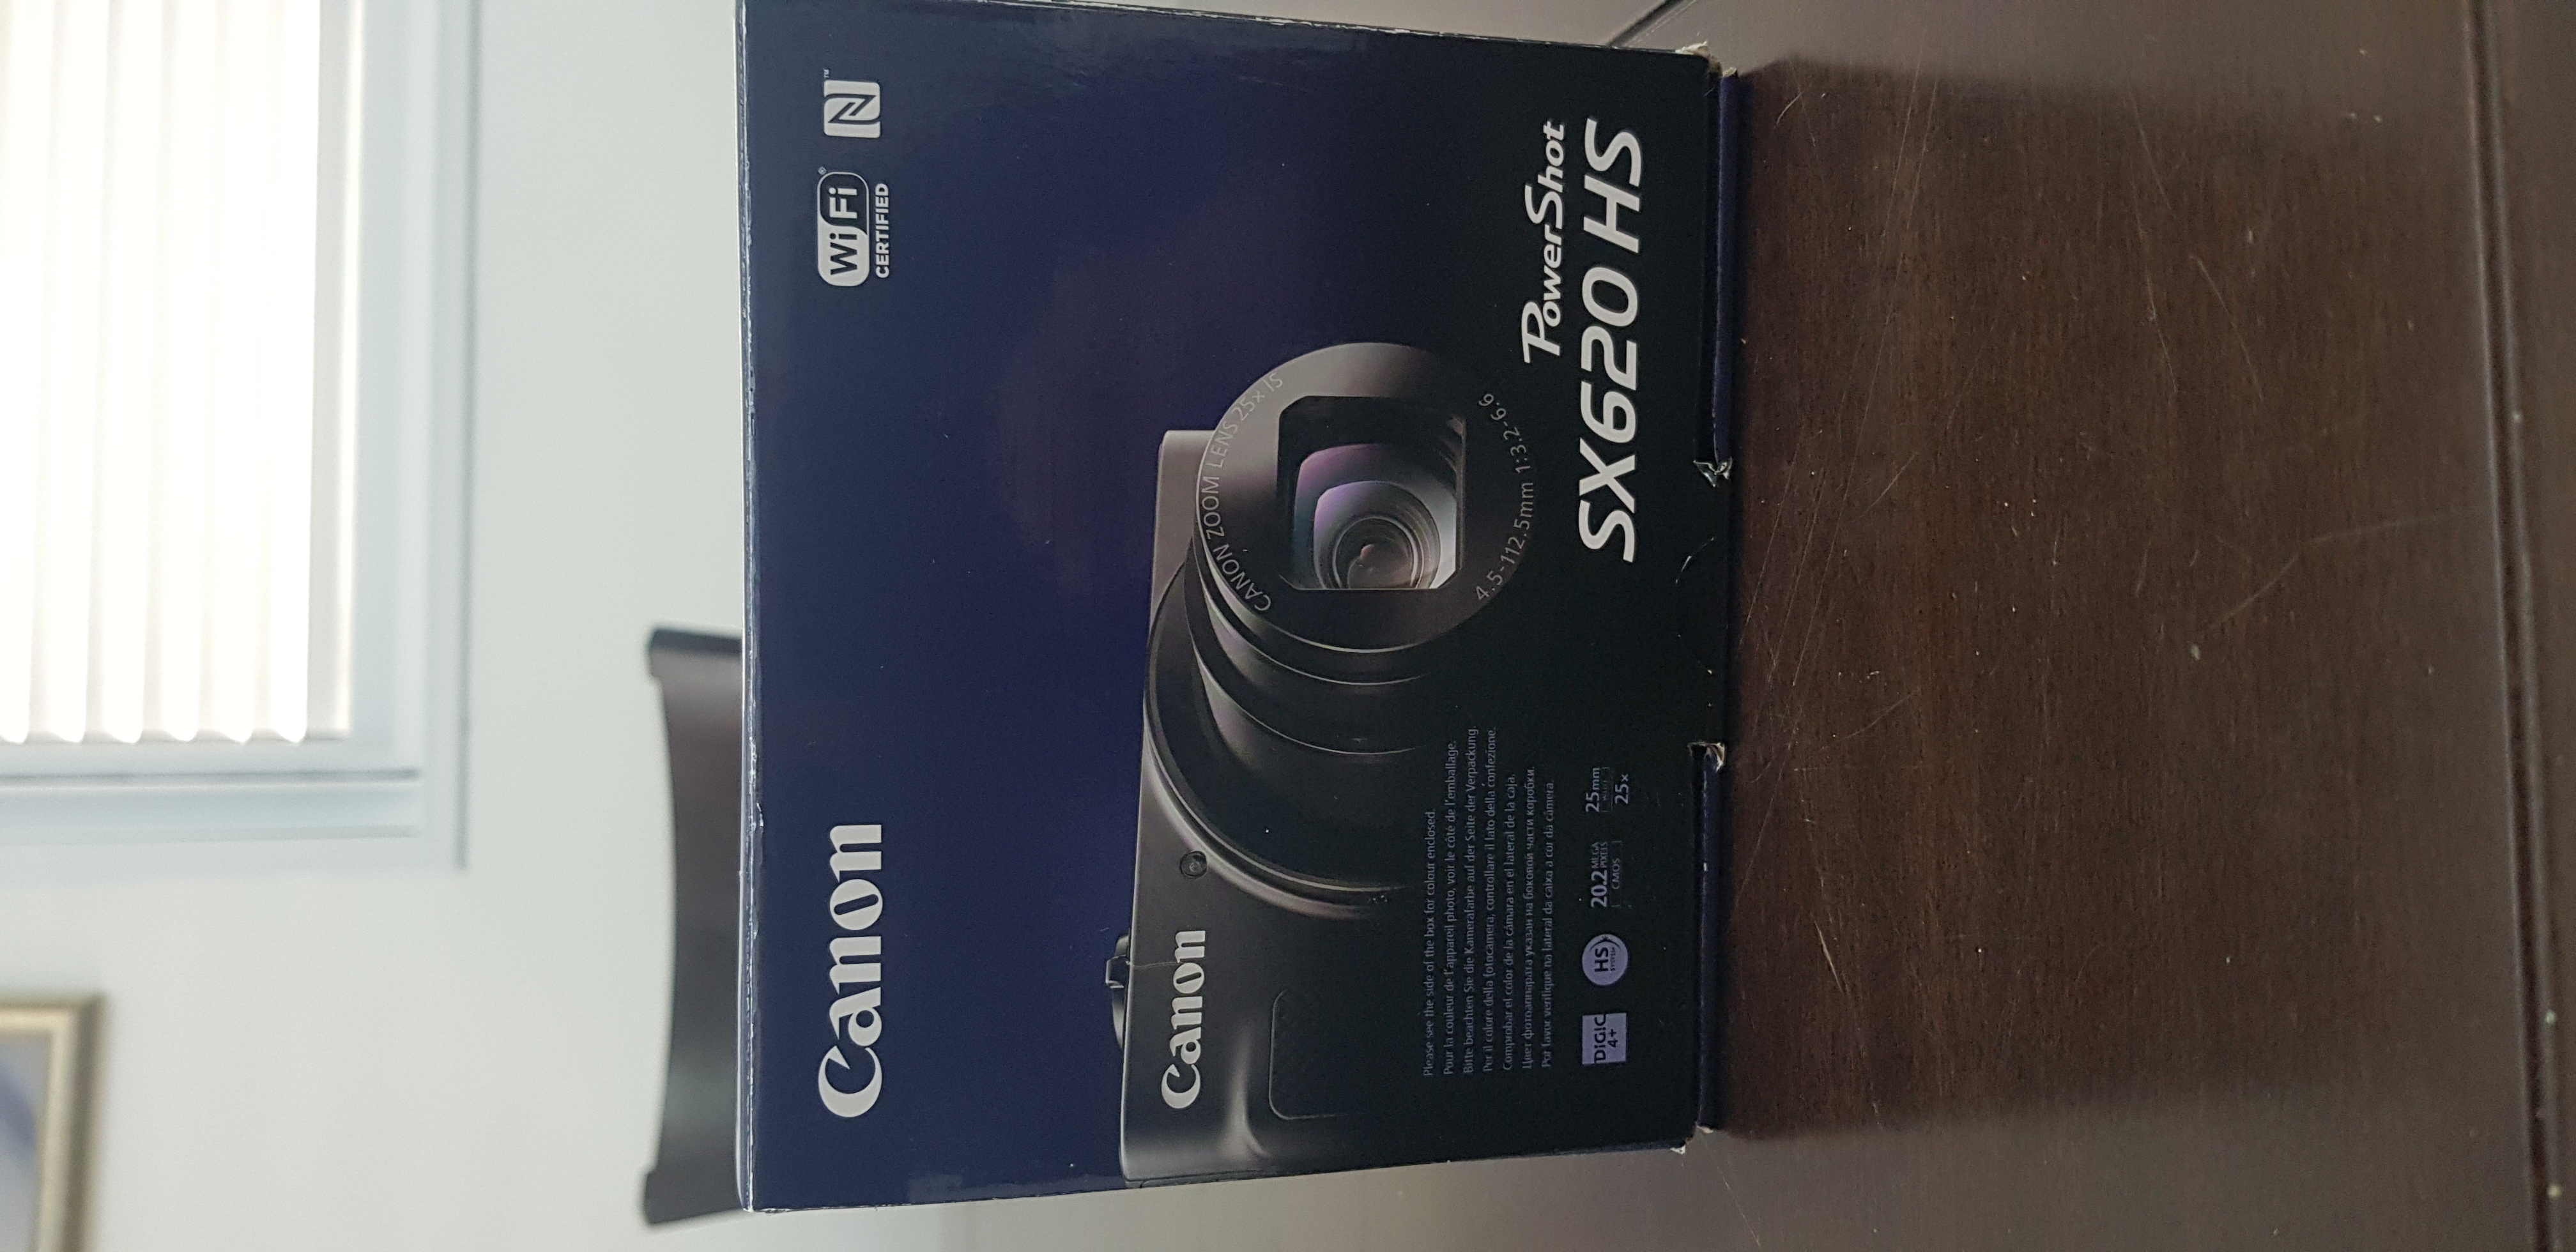 תמונה 1 ,למכירה מצלמת קנון SX620 HS  למכירה בכפר סבא צילום  מצלמה דיגיטלית